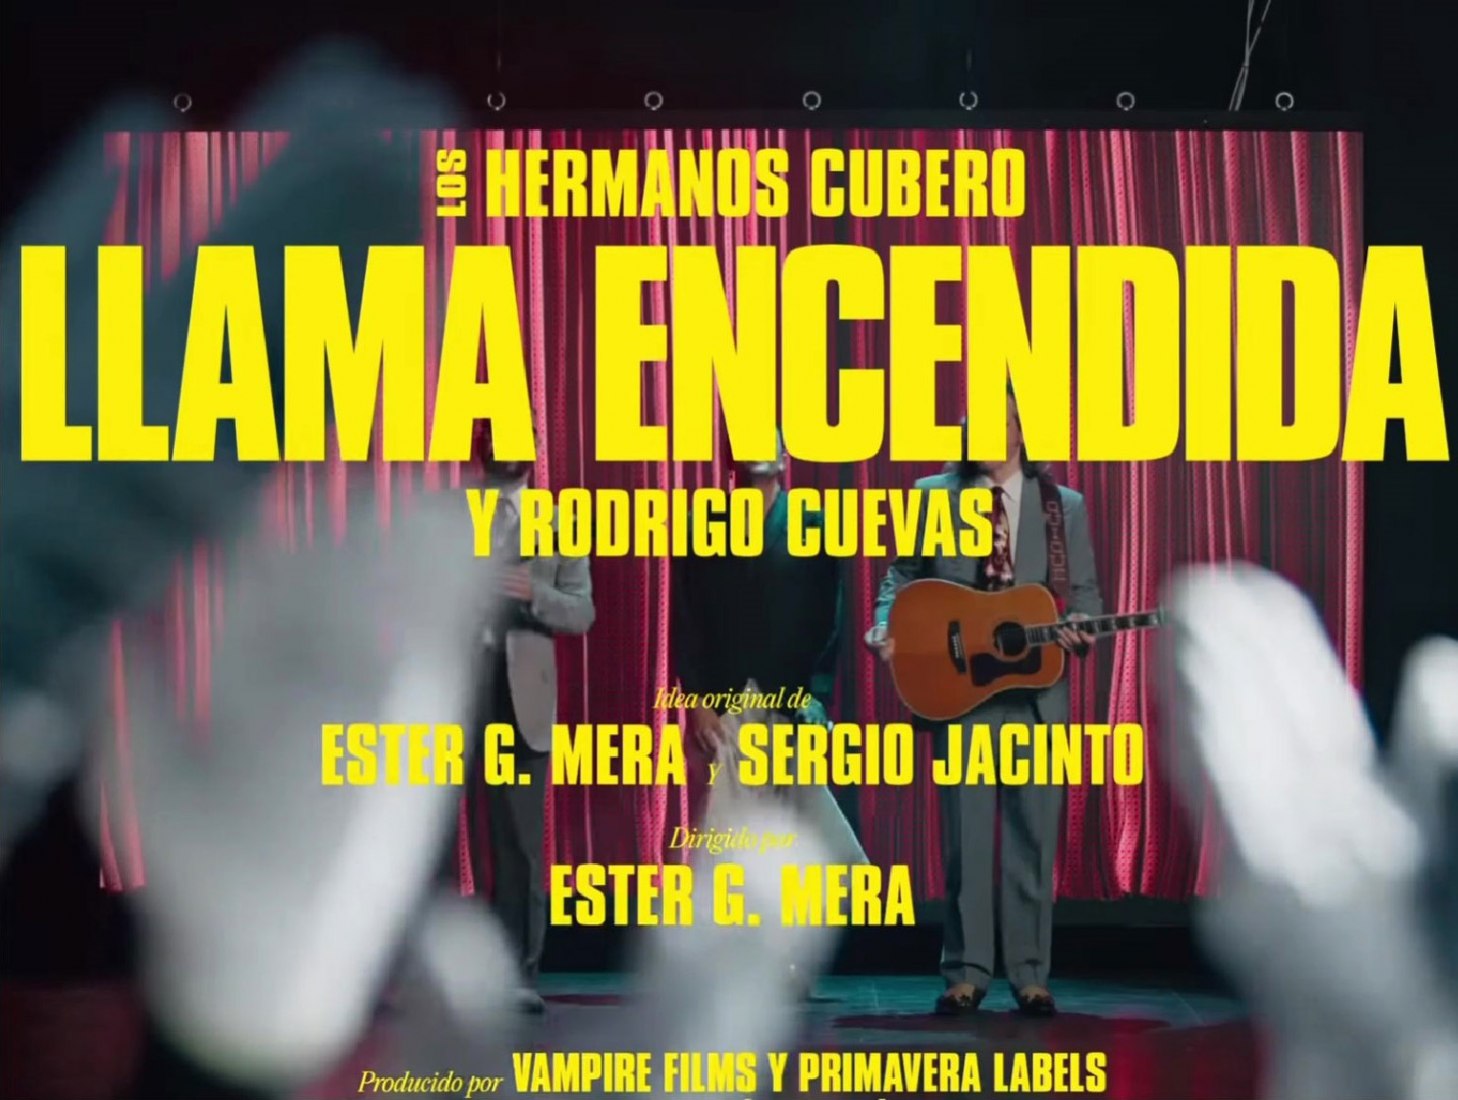 Llama encendida by Los Hermanos Cubero, Rodrigo Cuevas